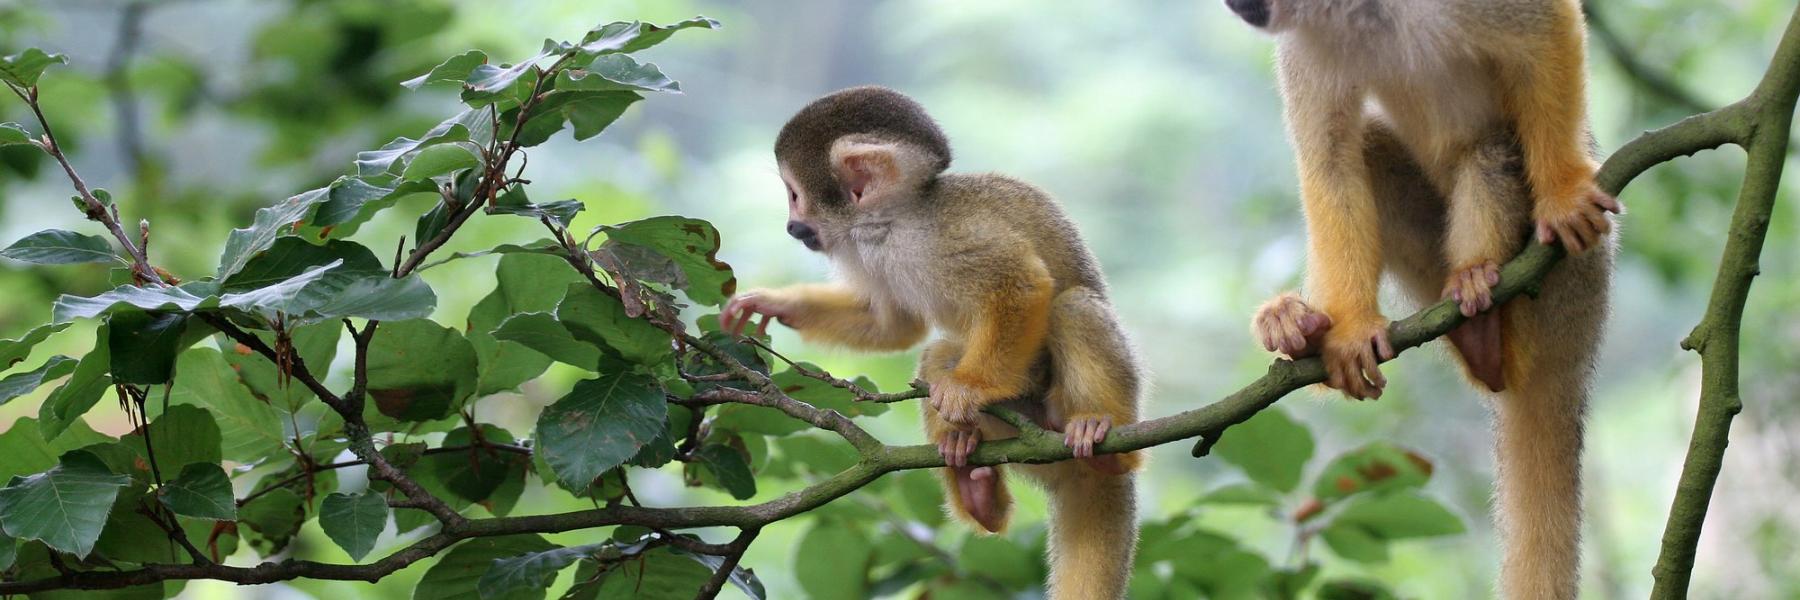 دراسة تكشف تبني إناث القردة أيتام المجموعات الأخرى